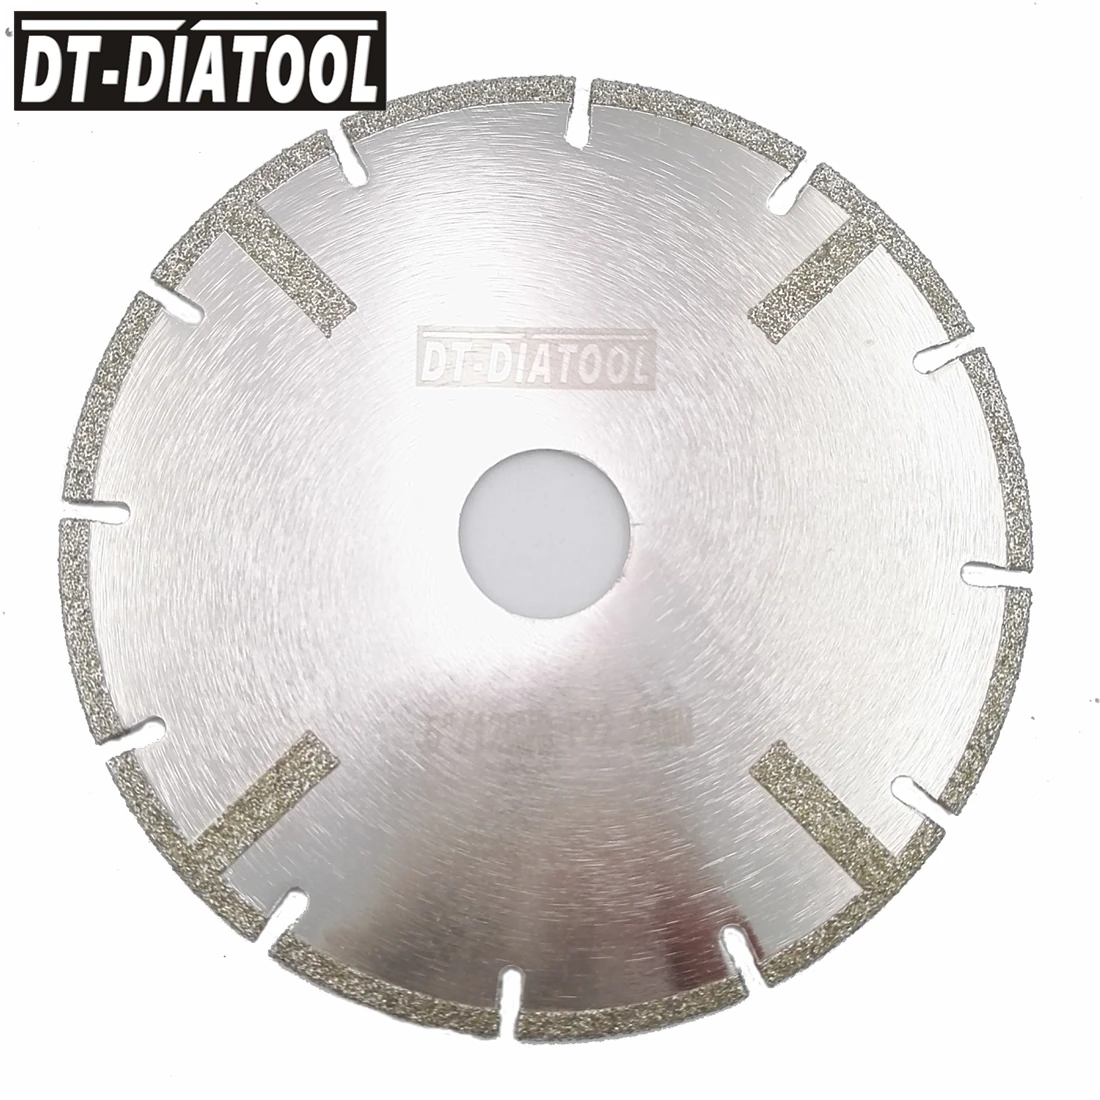 Гальваническое усиленное пильное полотно, DT-DIATOOL, 2 шт., 5 дюймов, алмазный отрезной диск, диаметр 22,23 мм, 125 мм, для камня, плитки, мрамора от AliExpress WW